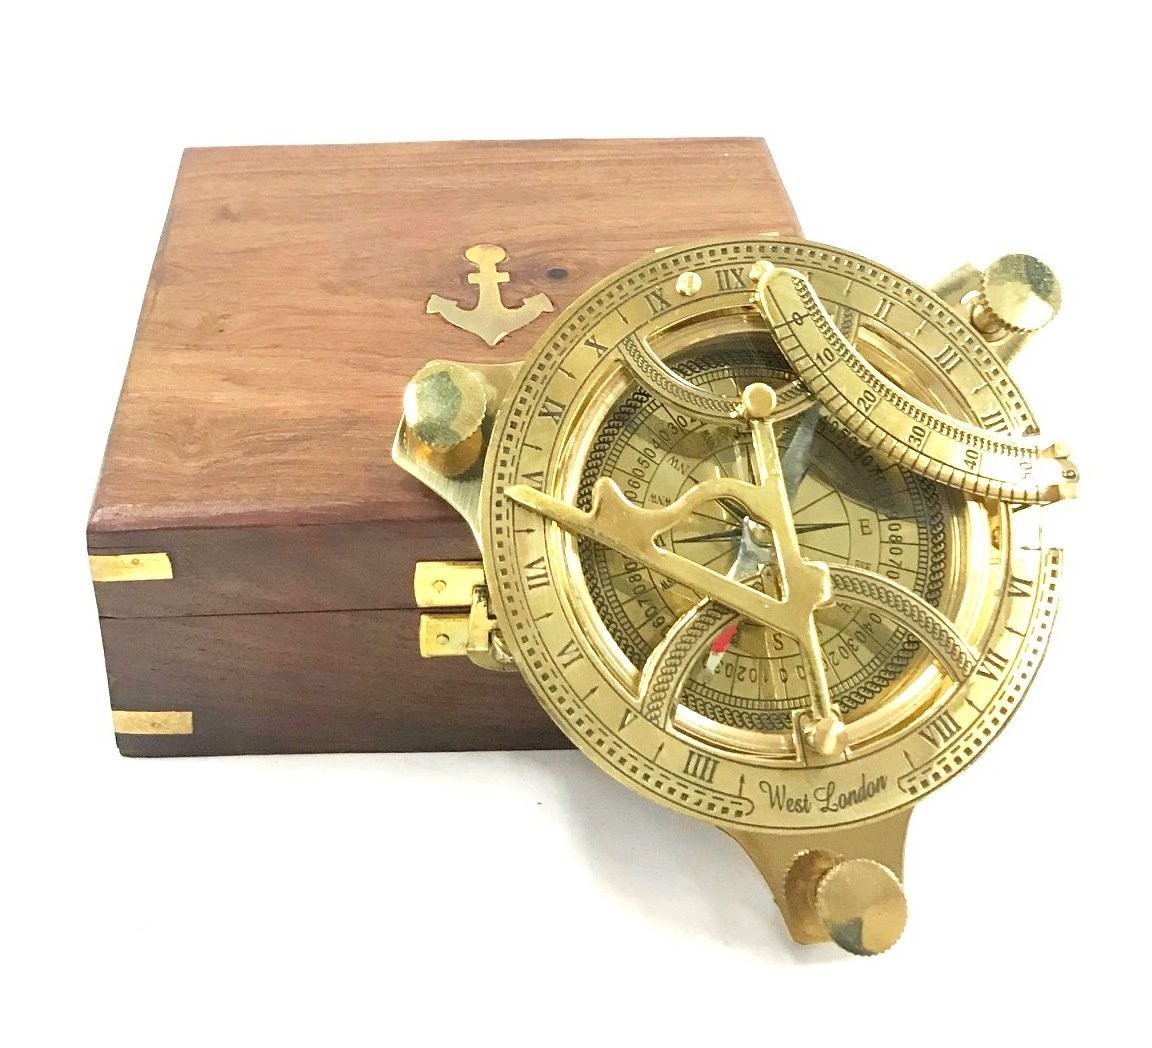 楽天市場 4インチ サンデル コンパス 羅針盤 箱サイズ 5インチ 12 7ｃｍ 磁気方位 ソリッド ブラス サンダイヤル 航海術 大洋 真鍮 Sundial Compass Solid Brass Sun Dial 輸入品 浪漫堂ショップ